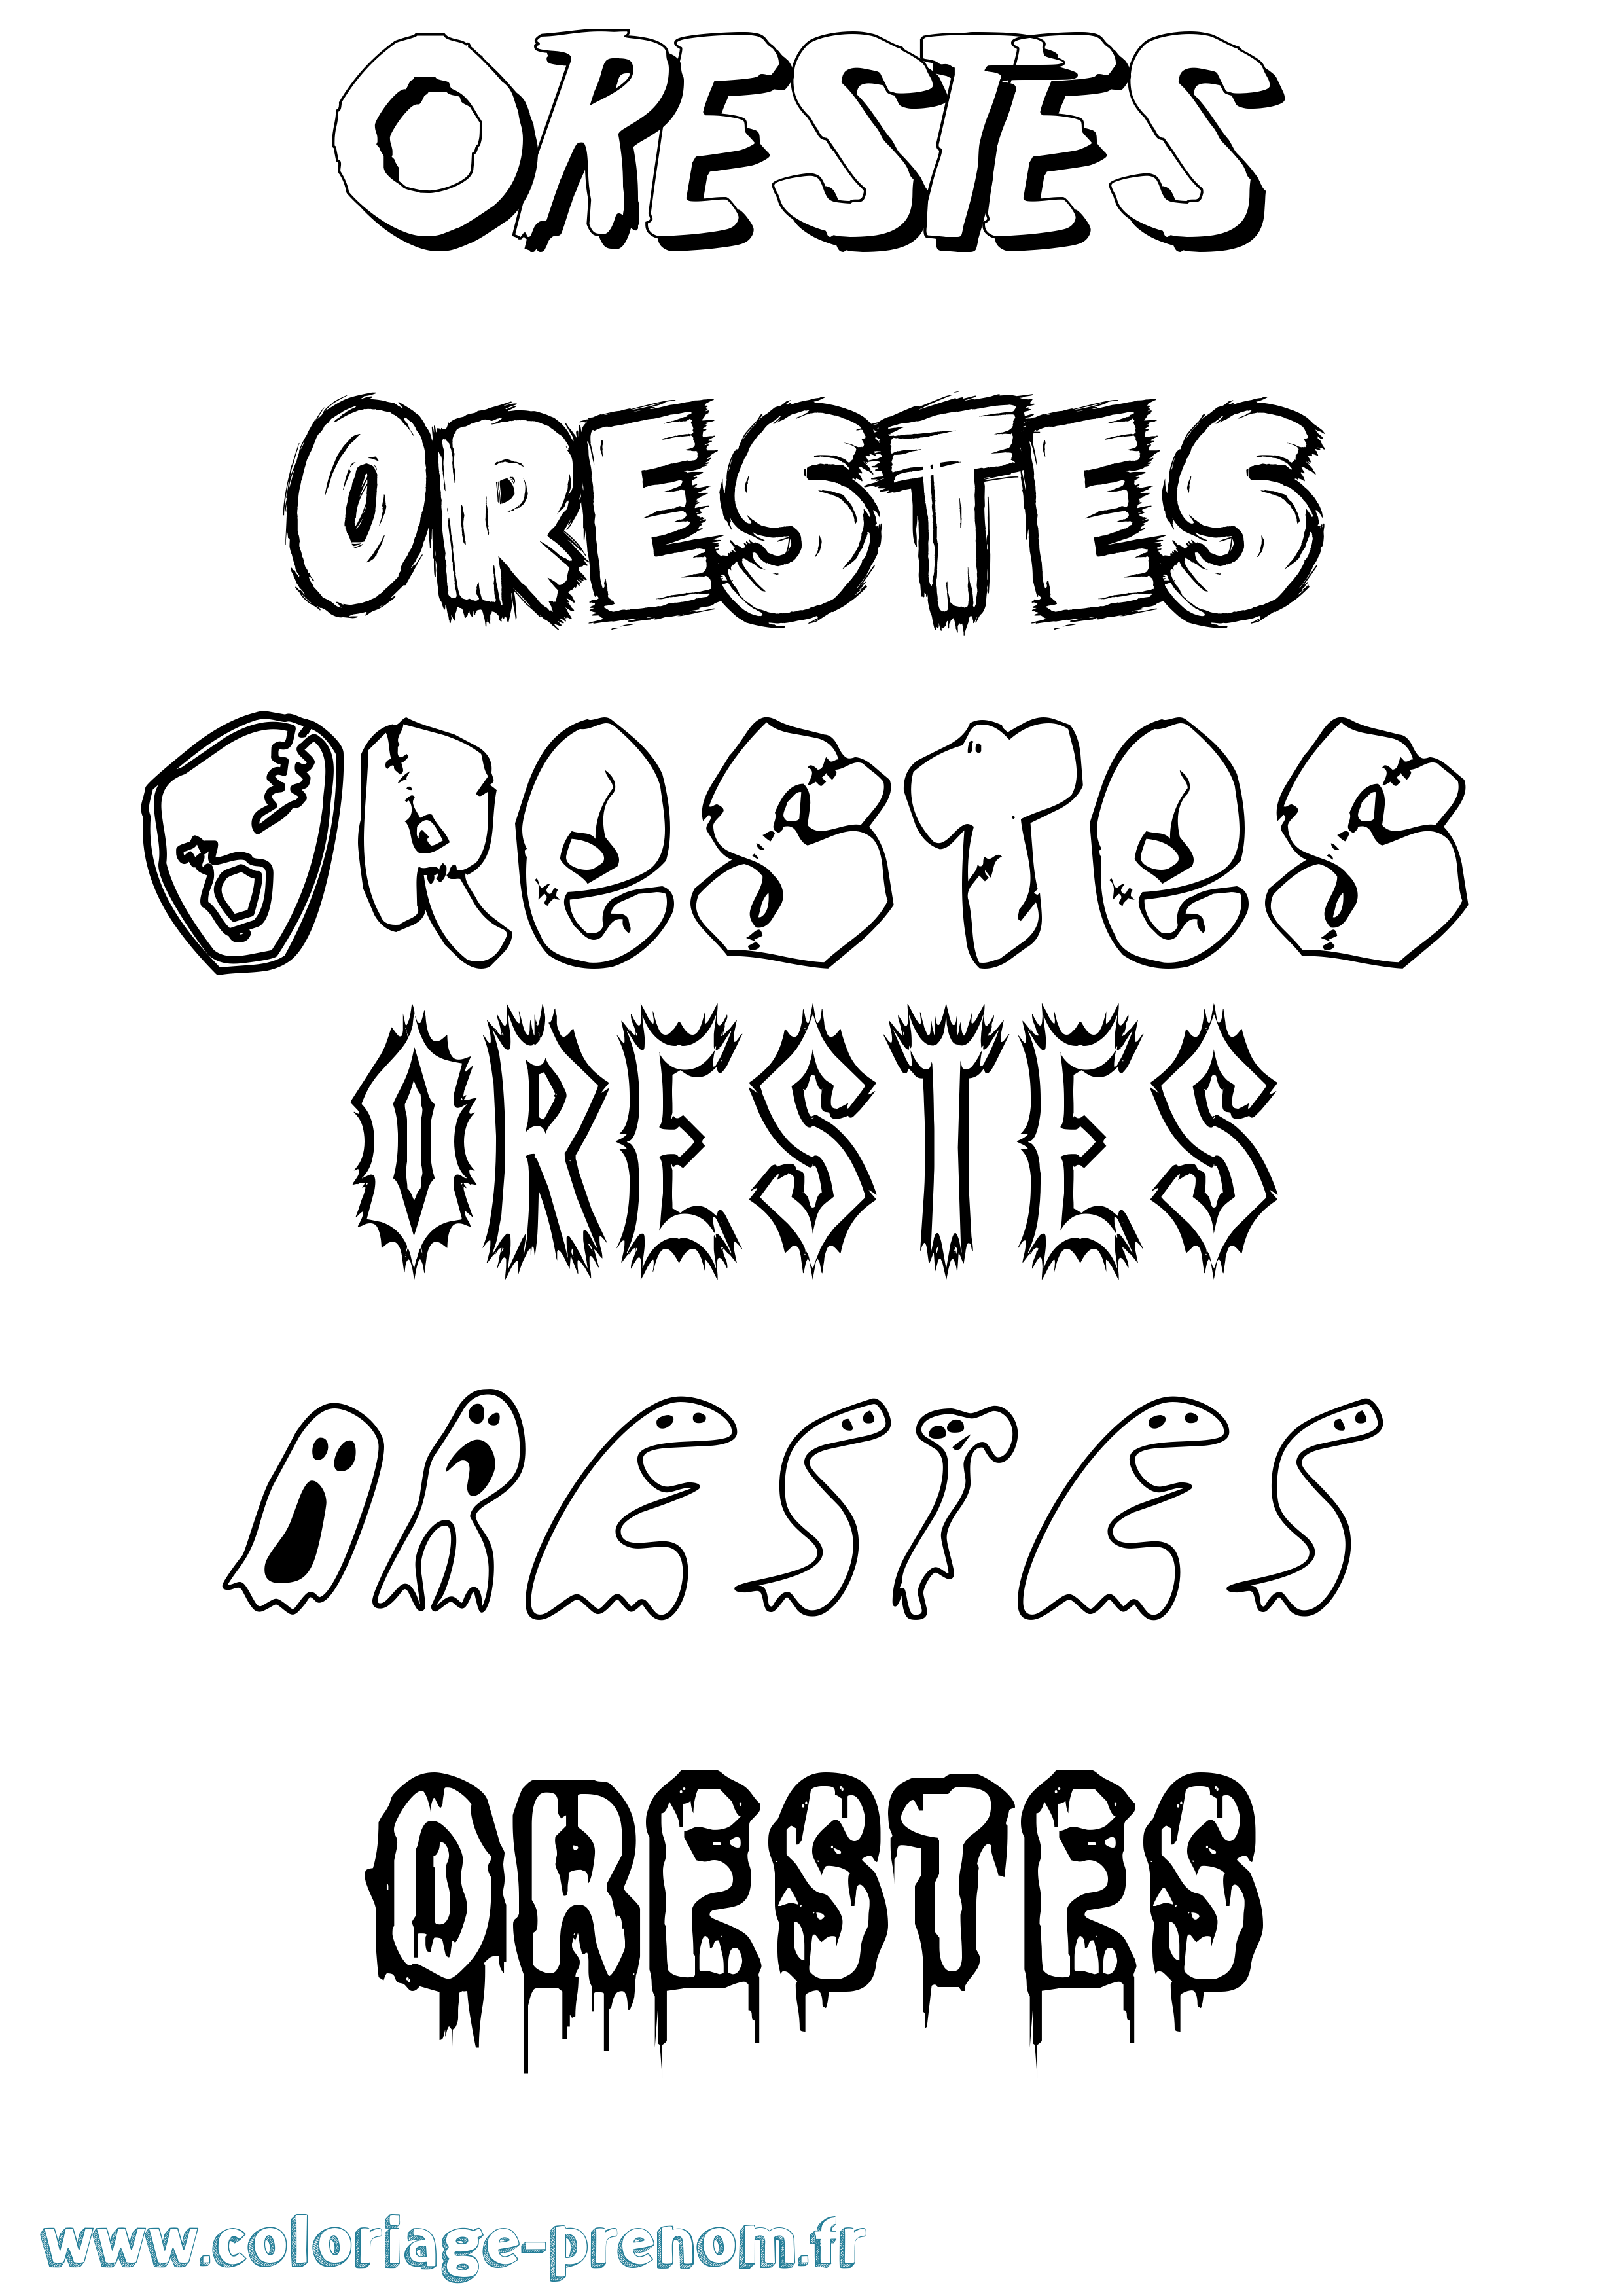 Coloriage prénom Orestes Frisson